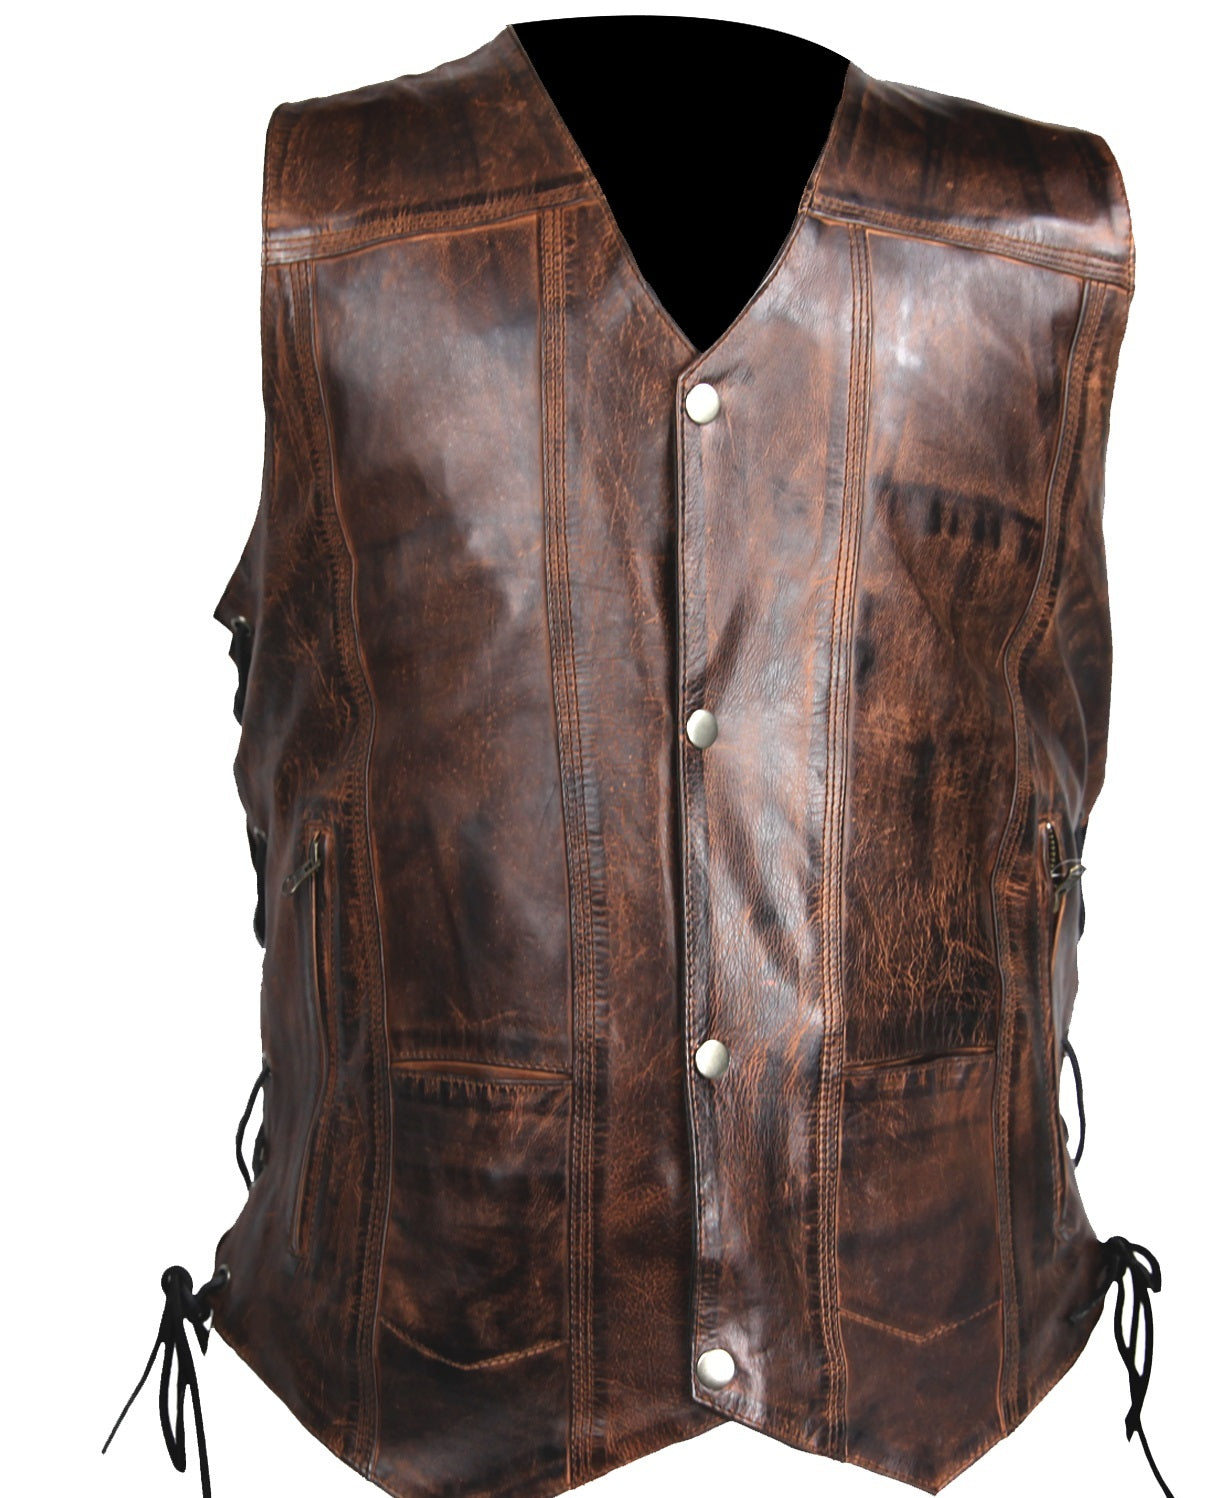 Vintage Brn Leather Biker Vest for Men - Antique look Motorcycle Vest ...